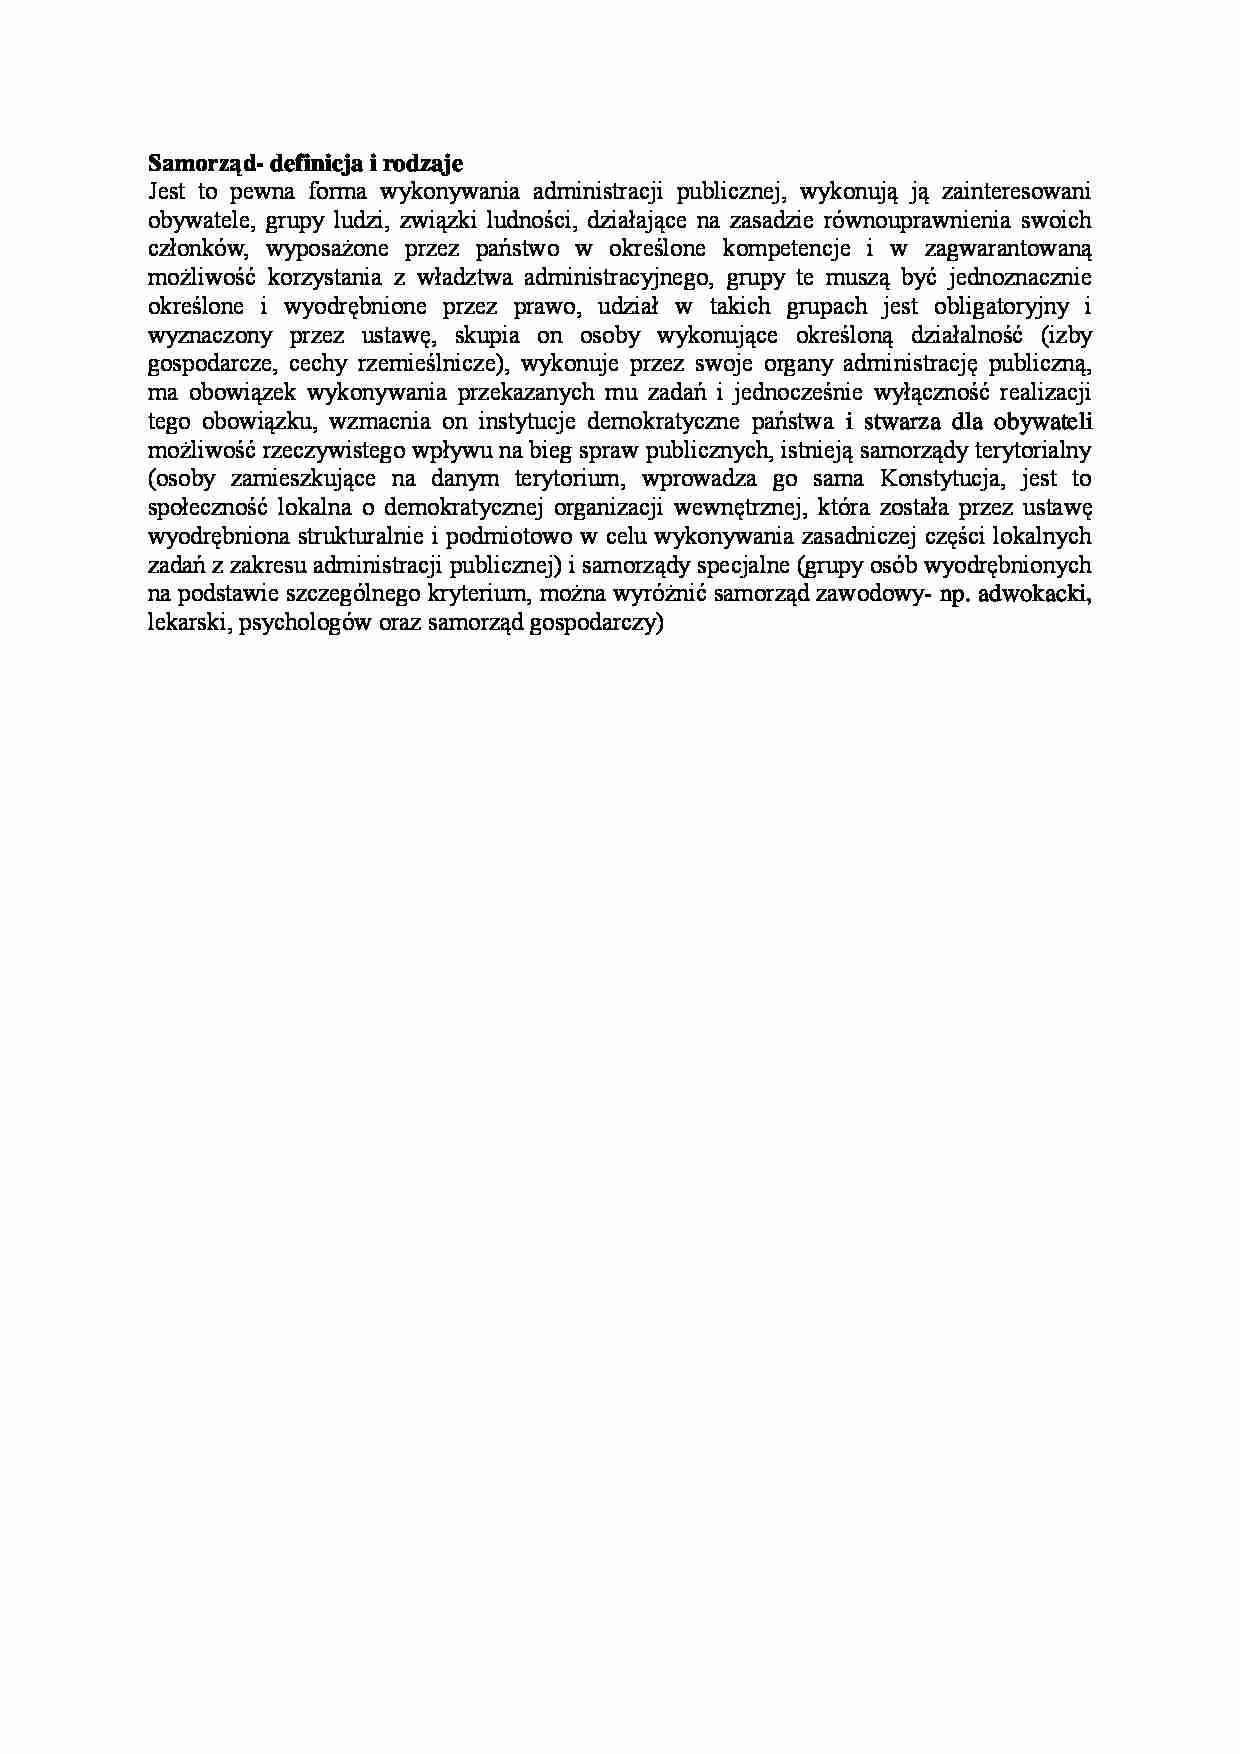 Samorząd - definicja i rodzaje - wykład - strona 1